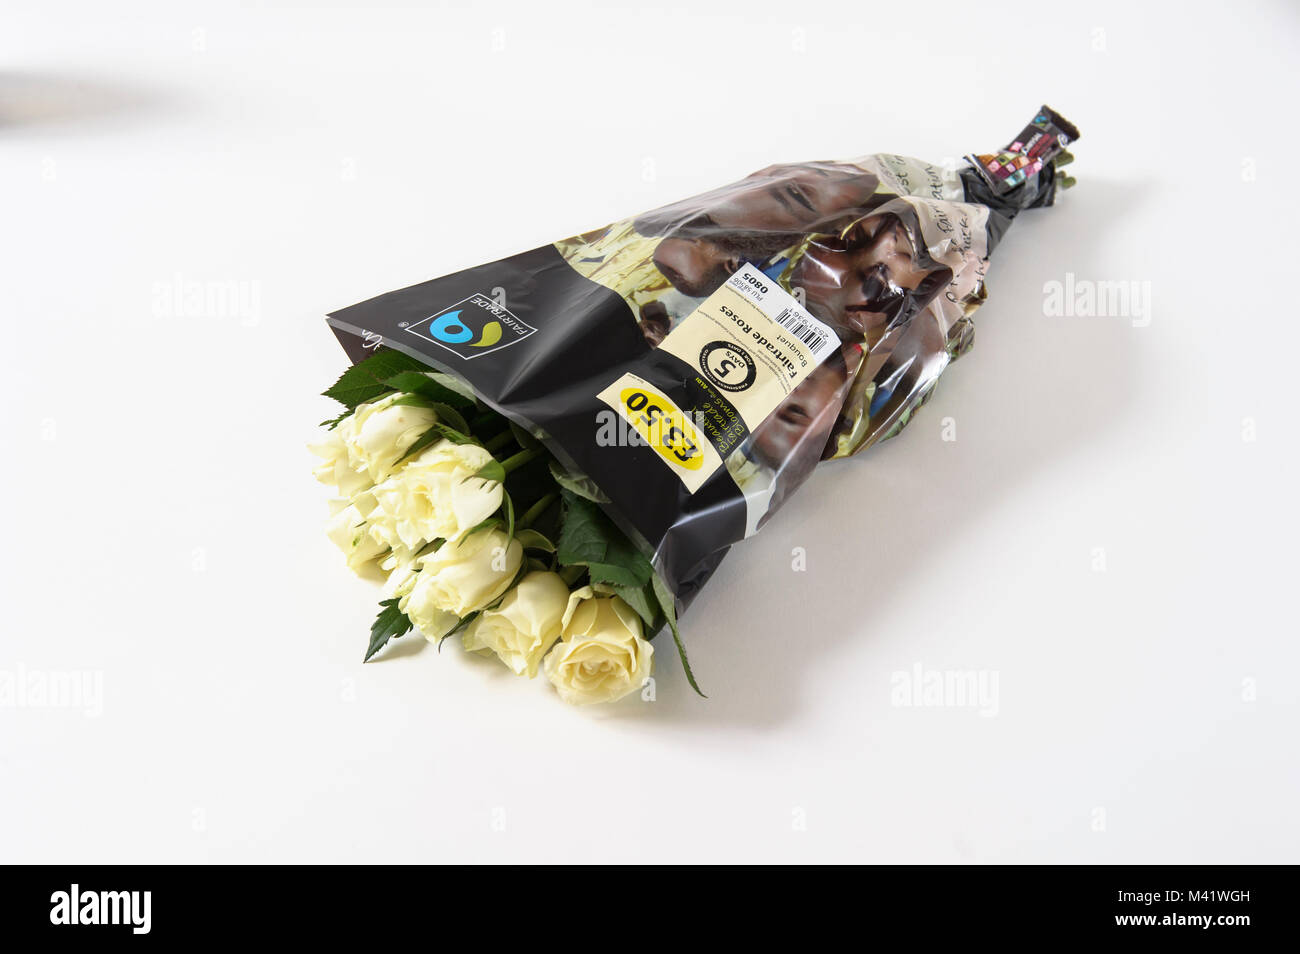 Aldi Supermarkt Frische weiße Rosen Stockfotografie - Alamy